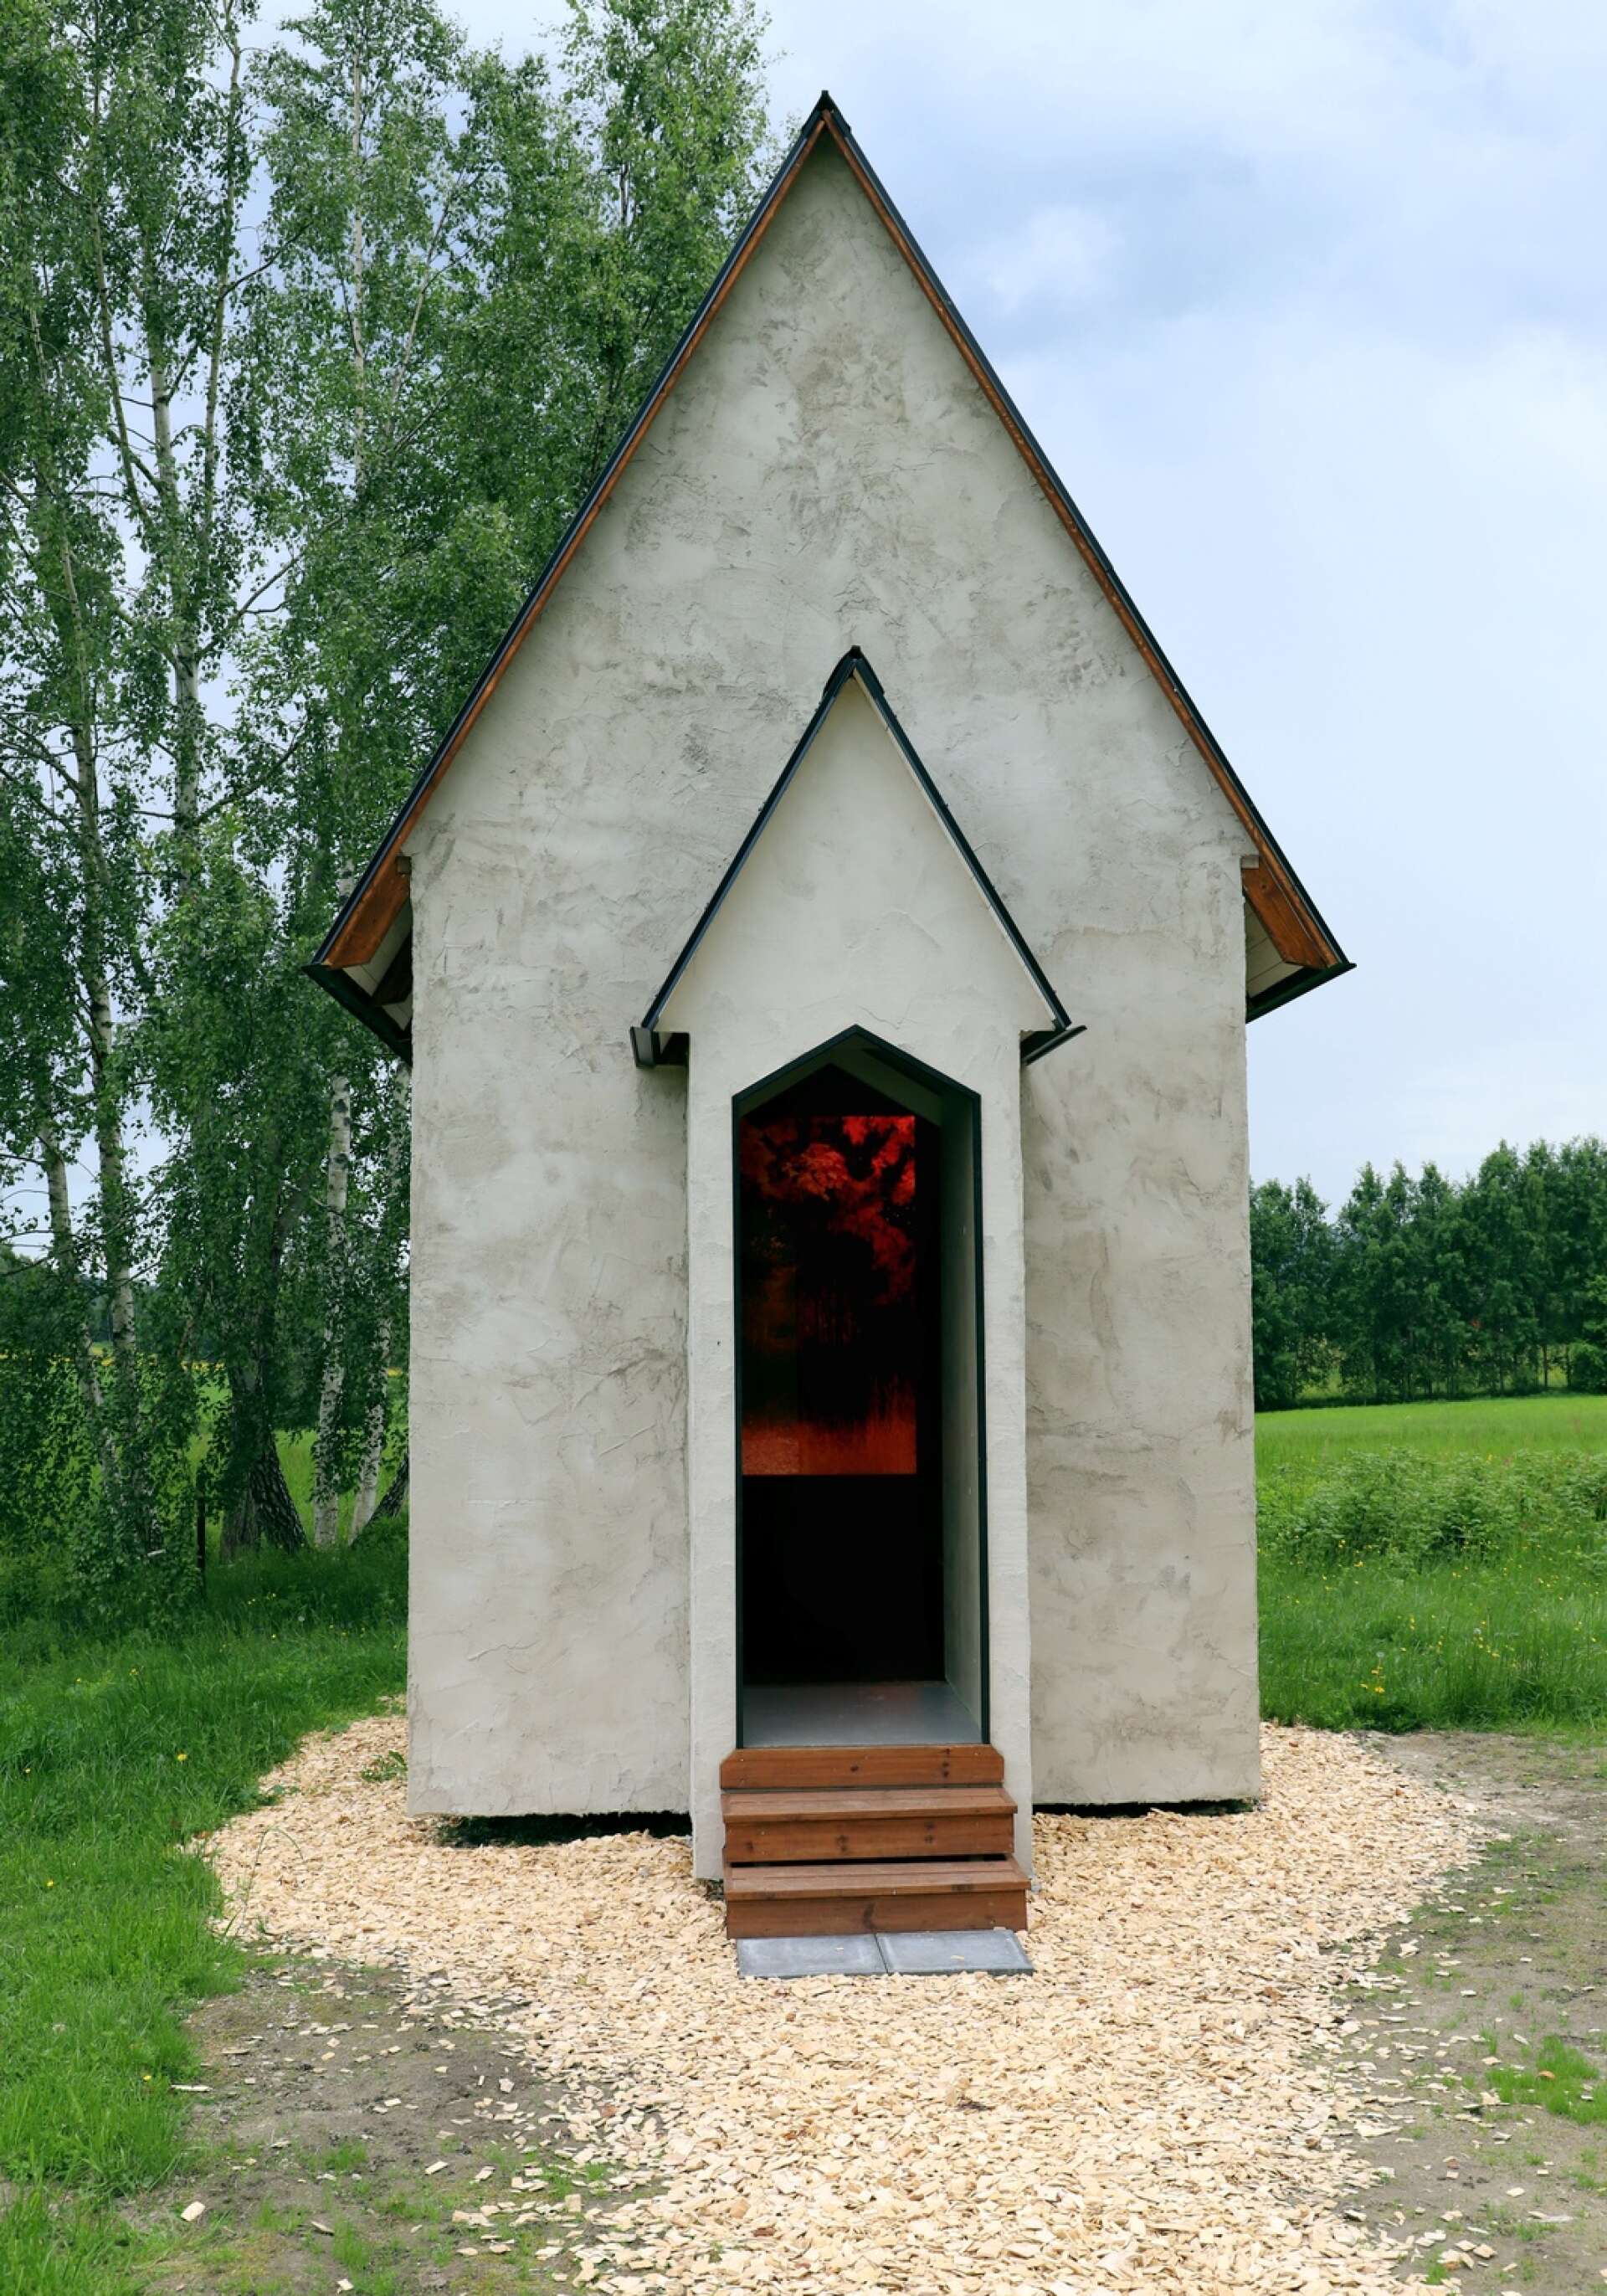 Varje paviljong bjuder på konstupplevelser. I den här kapell-liknande finns fotografier och en hundskulptur av Lovisa Ringborg.